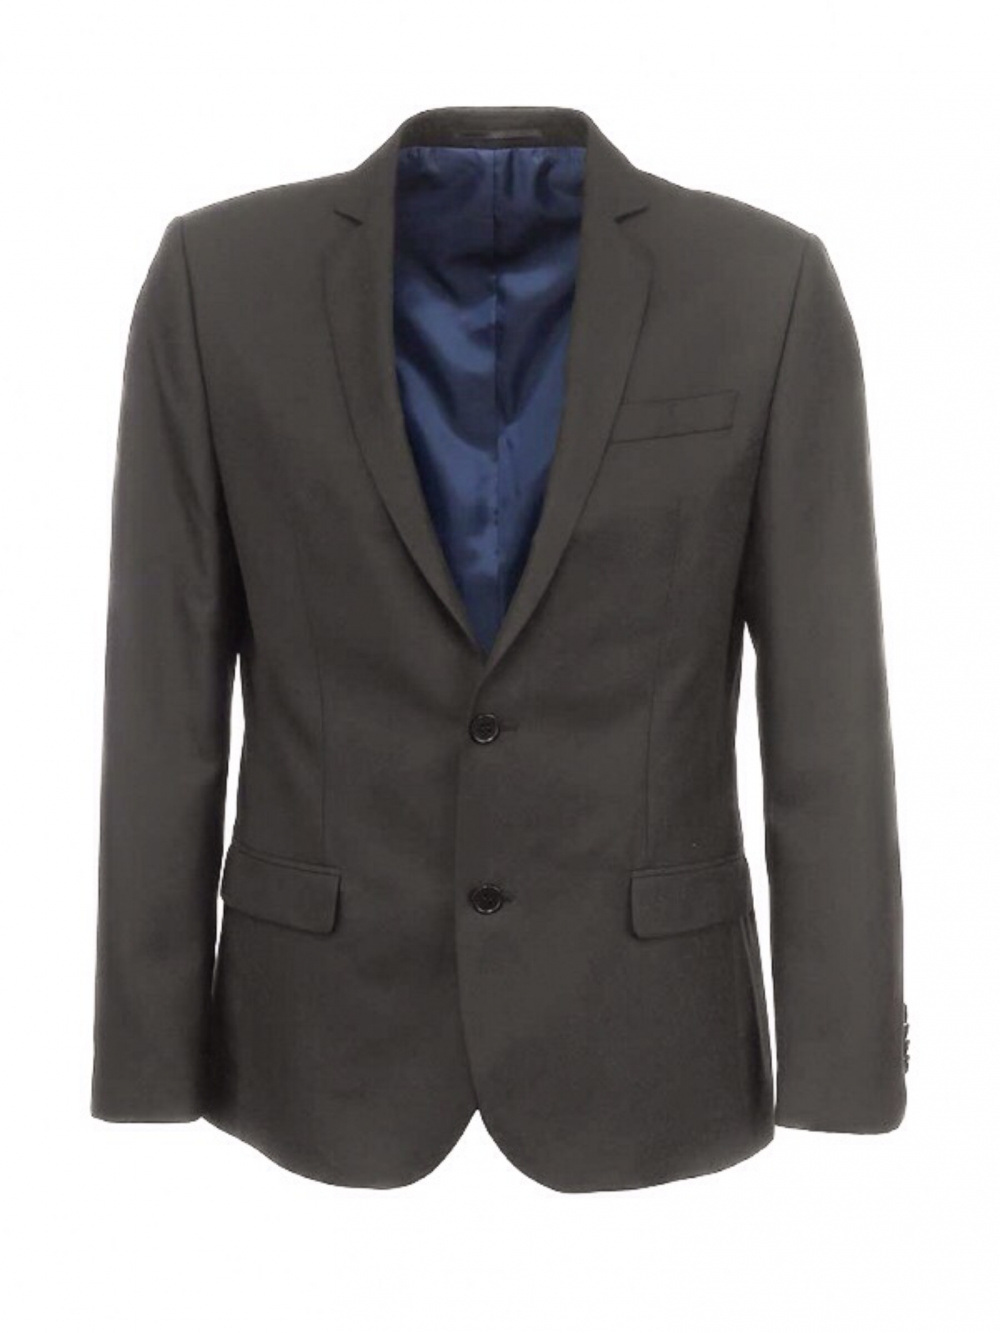 Классический мужской пиджак, серый, RIVER ISLAND, на 46 р, б/у 1раз